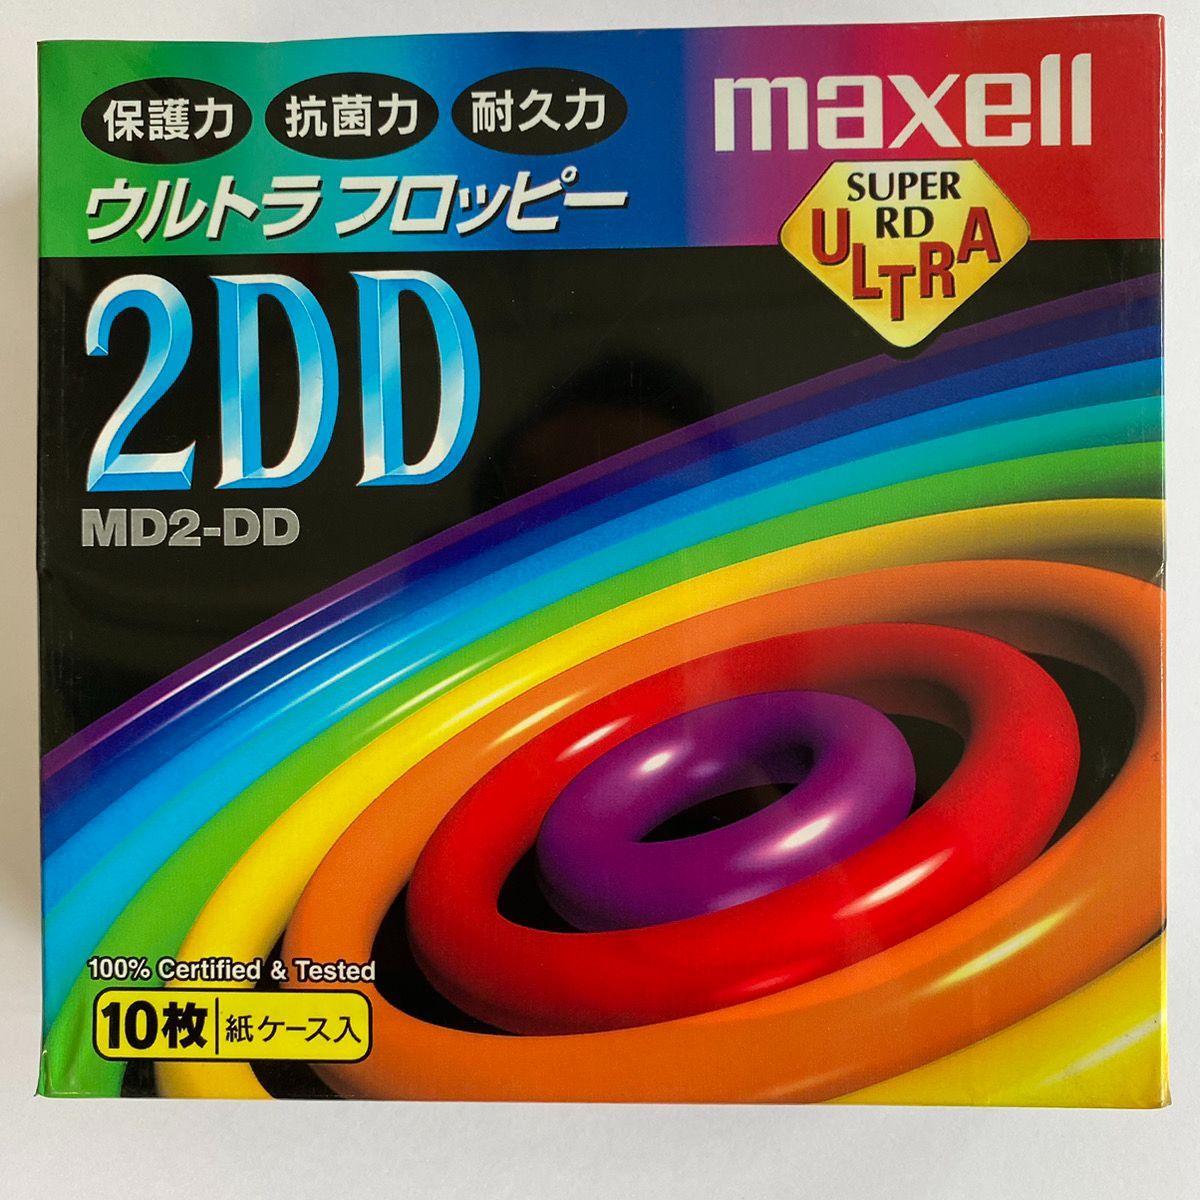 【セール低価】2DD TDK 3.5インチ フロッピーディスク 10枚パック 40箱 ノートPCケース